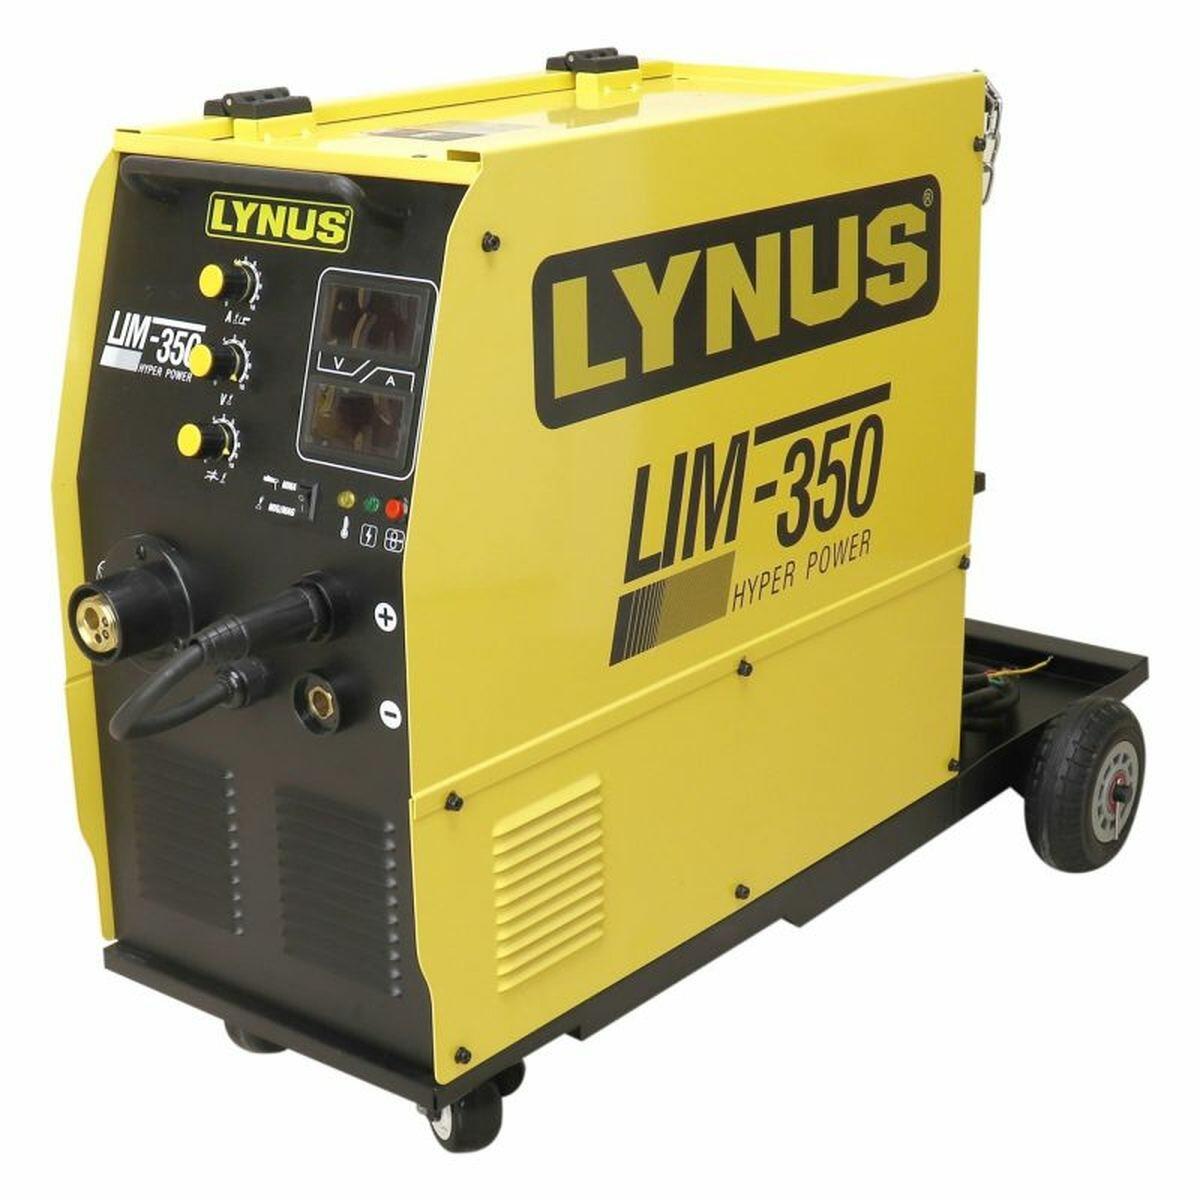 Inversor de Solda Hyper Power Lim-350 220/380V Bivolt para Cilindro e Arame Lynus